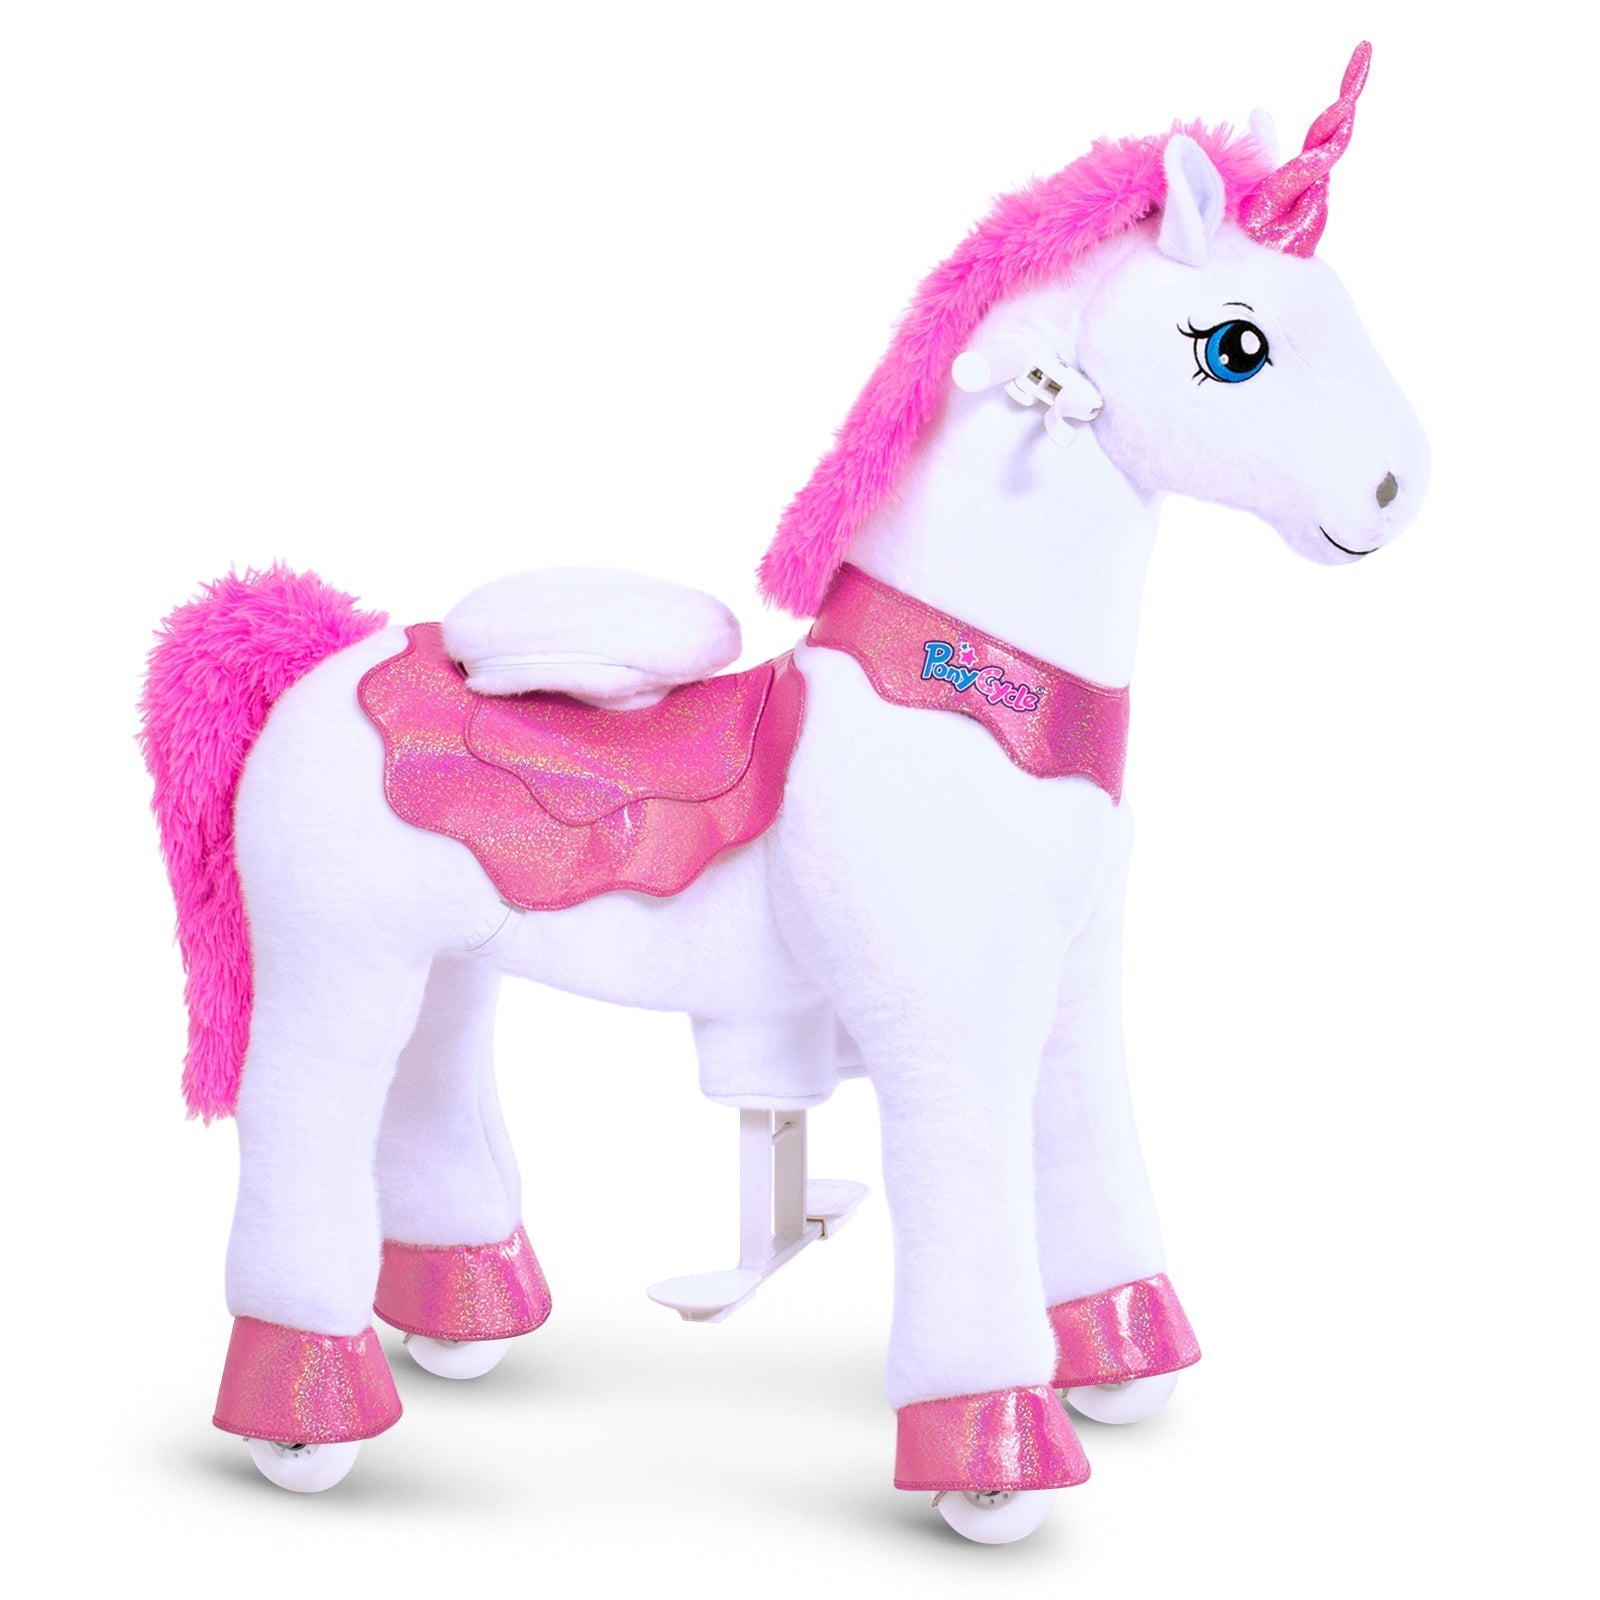 PonyCycle Model E Ride-on Unicorn Toy Age 4-8